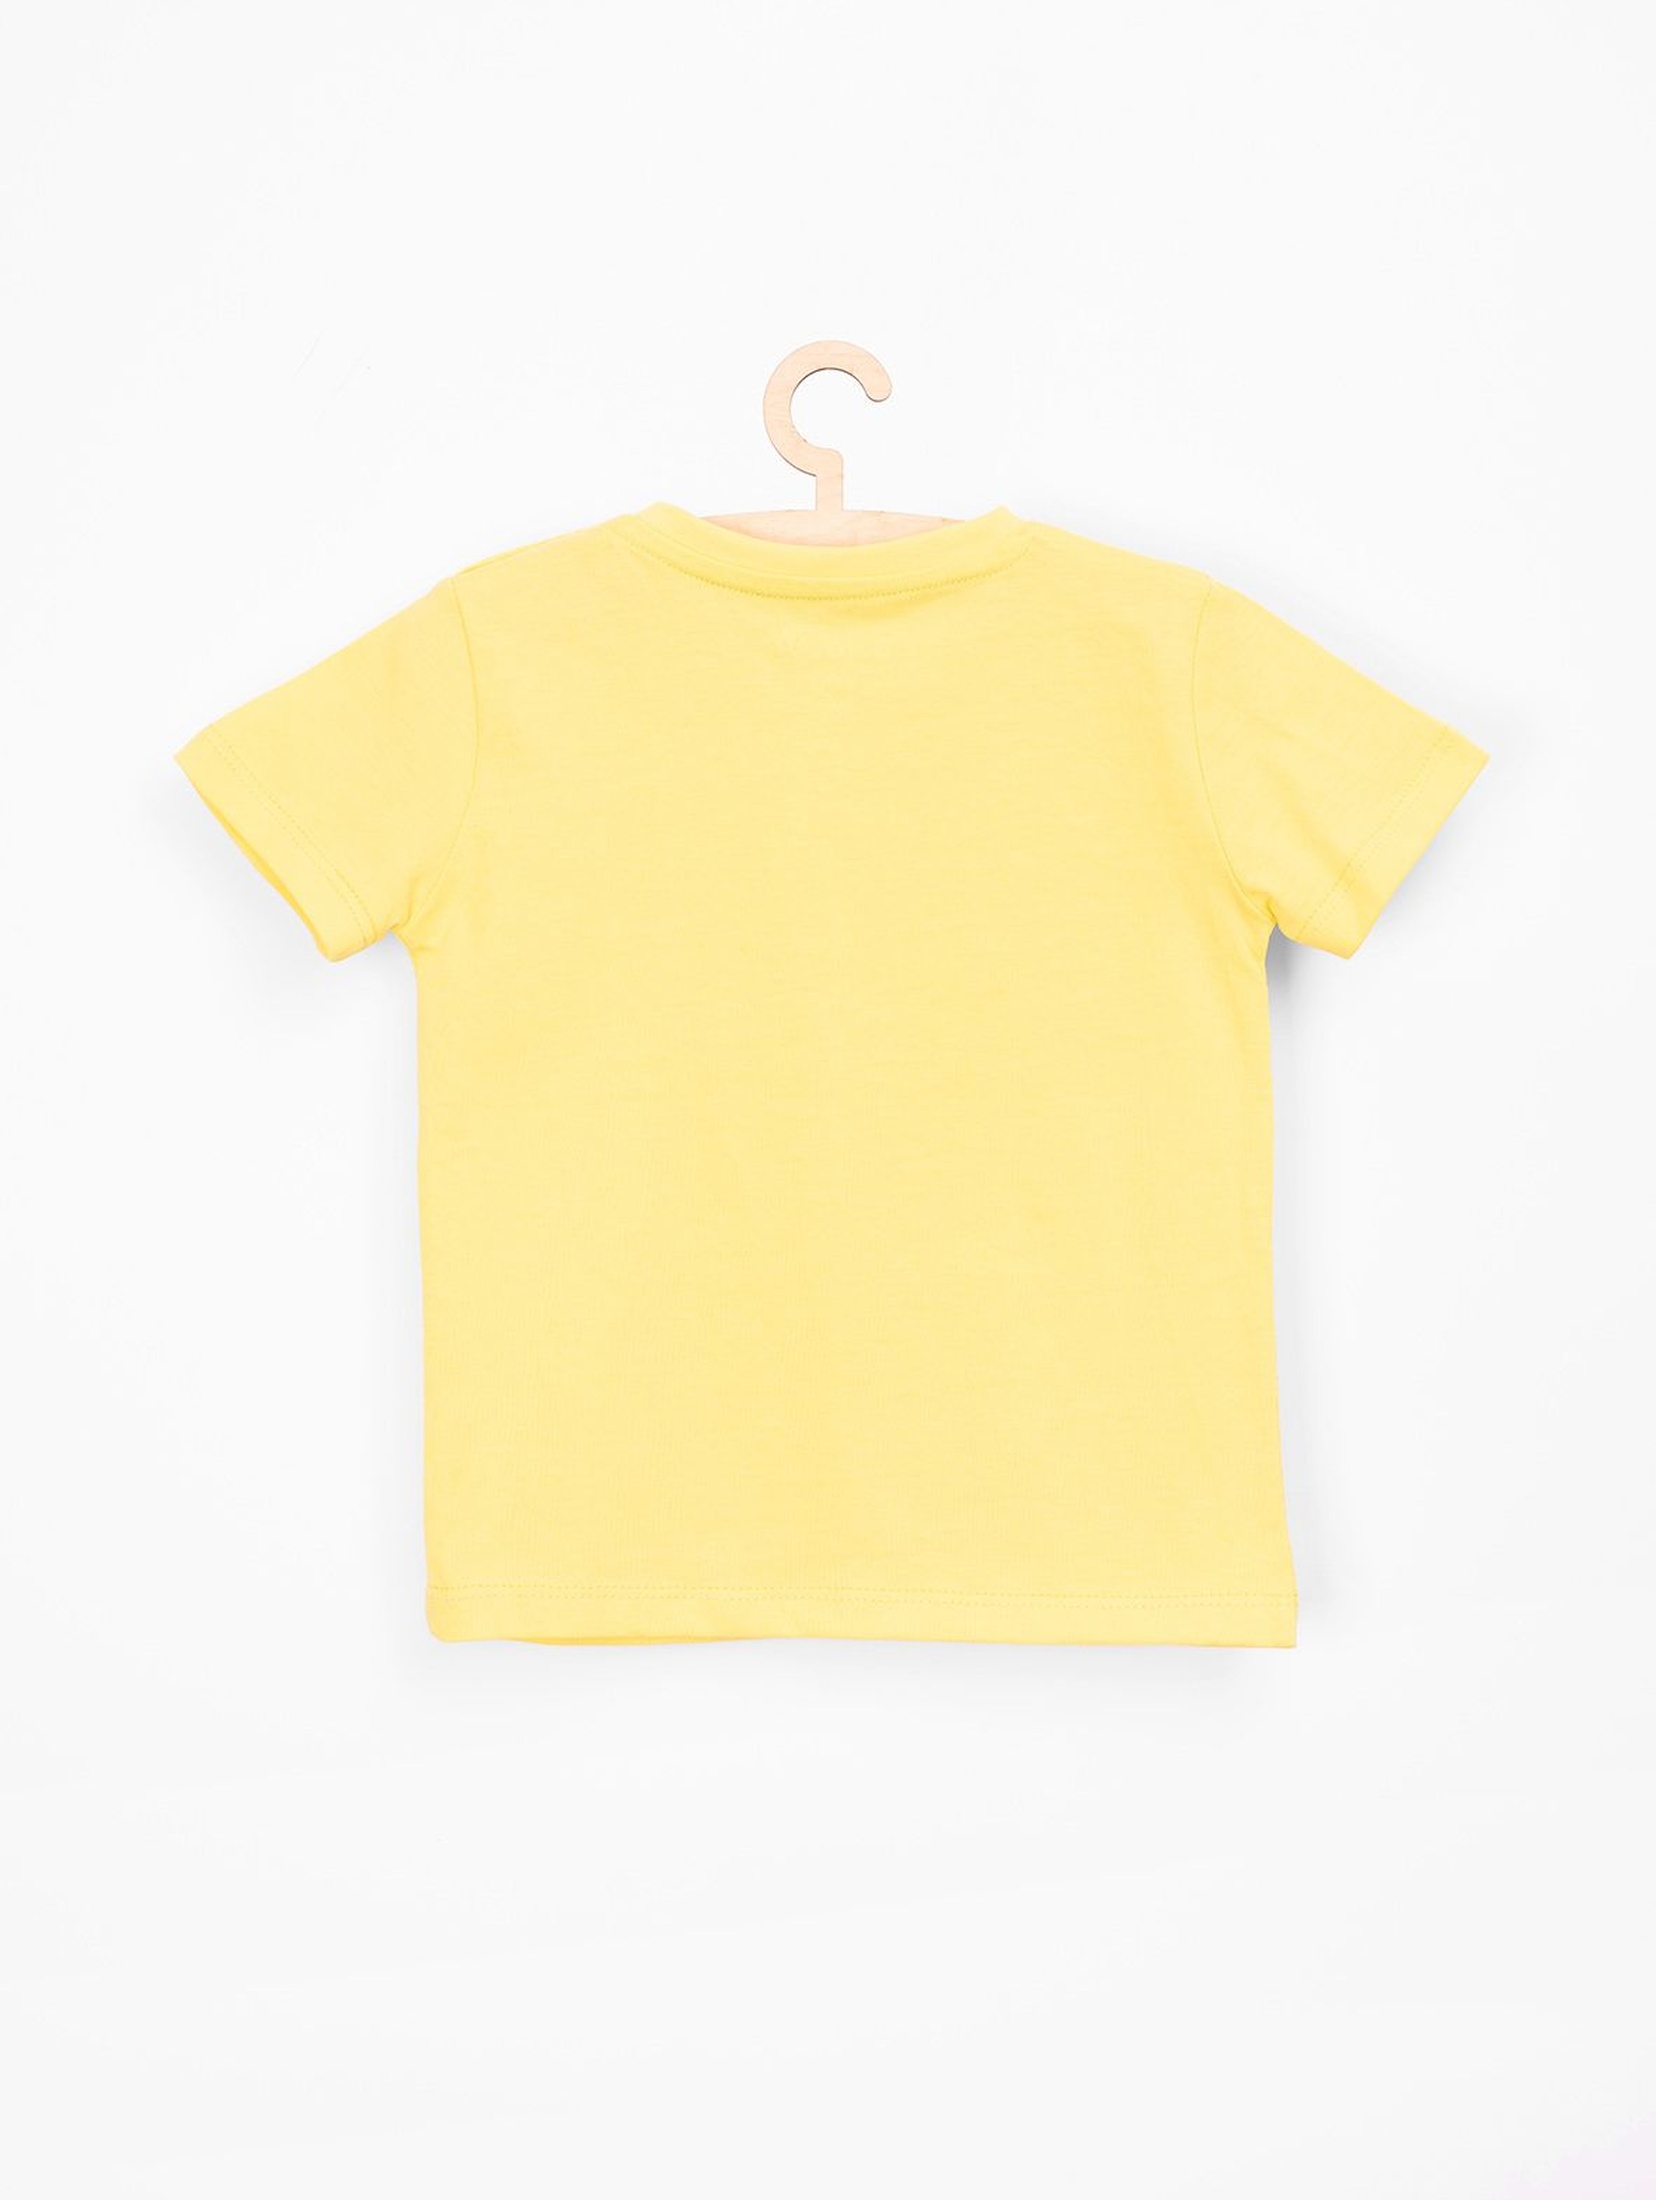 T-shirt dla niemowlaka- zółty z krokodylem